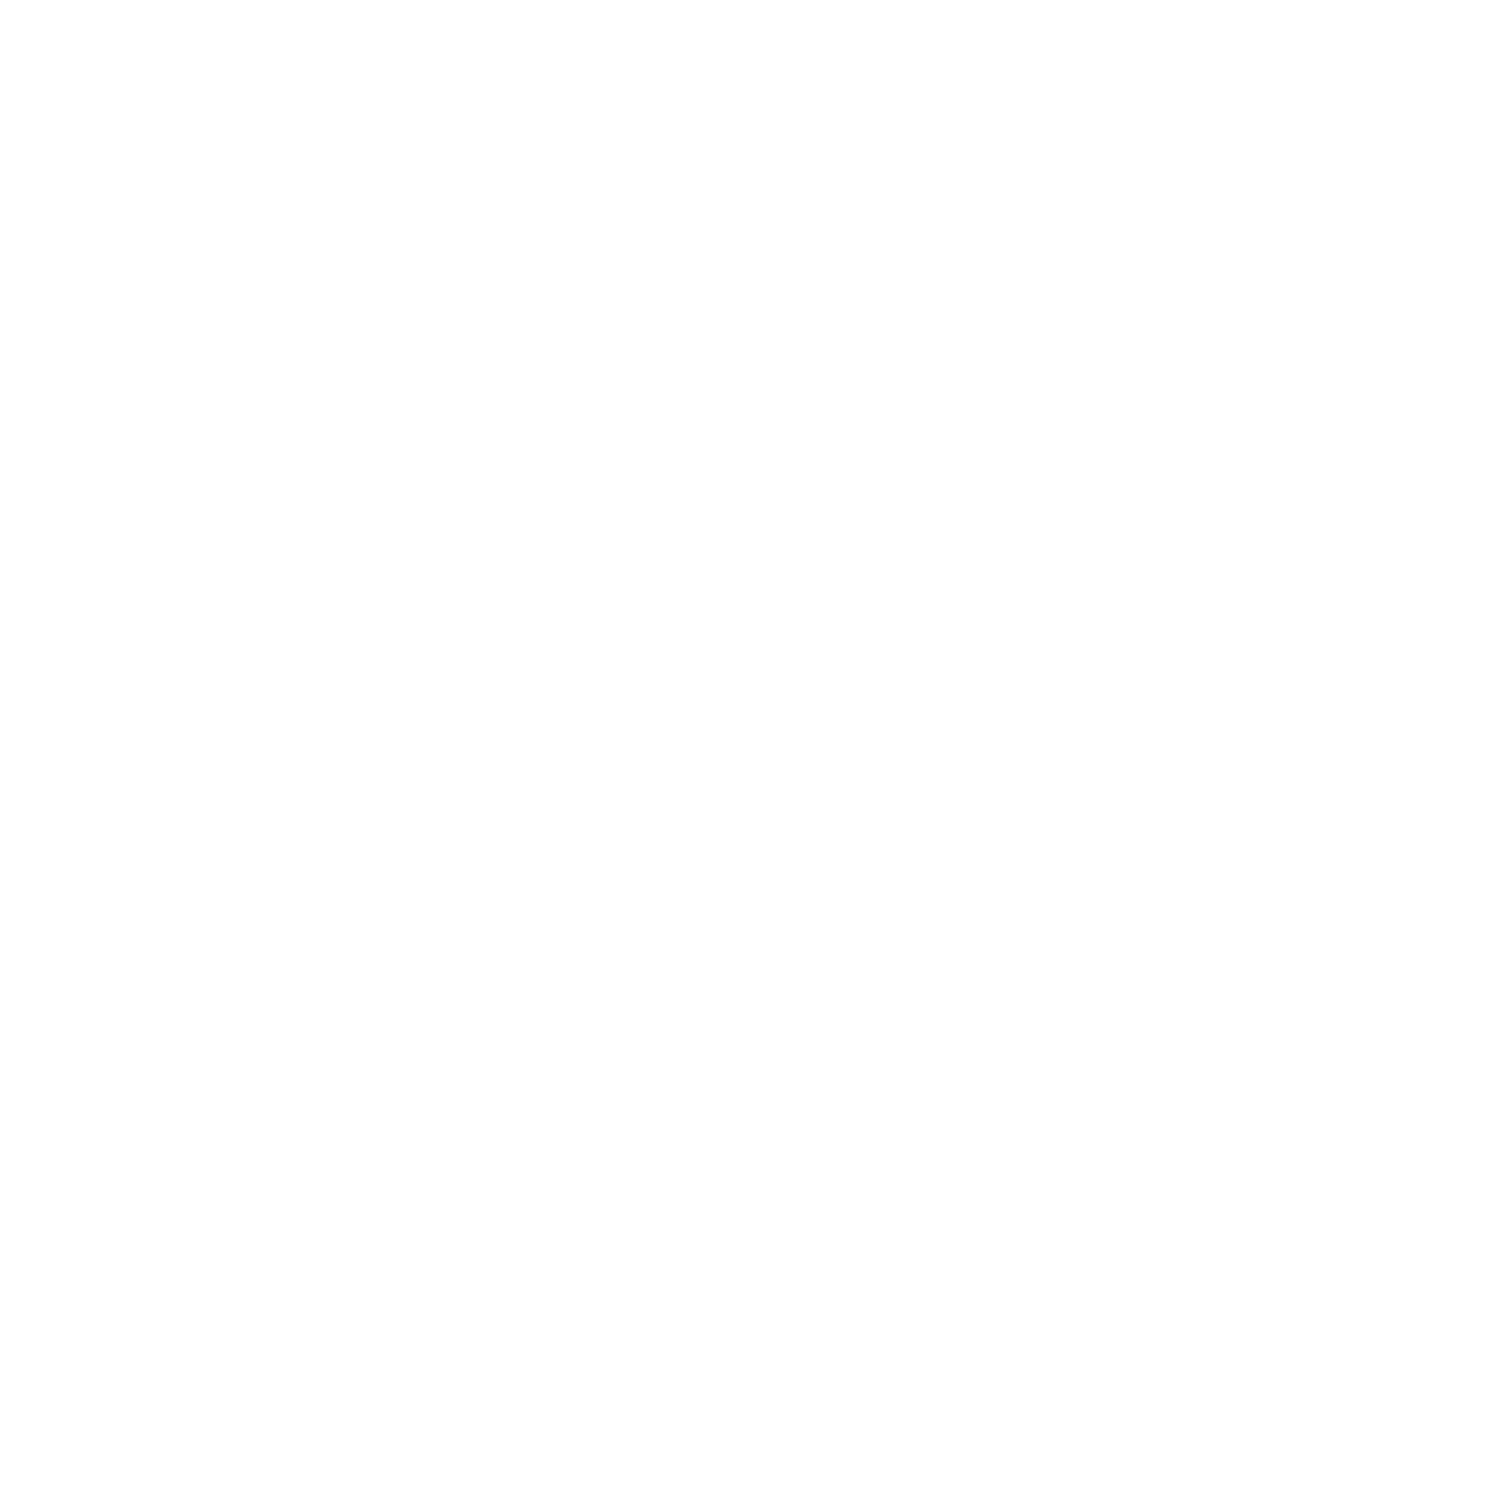 Meracle Acres